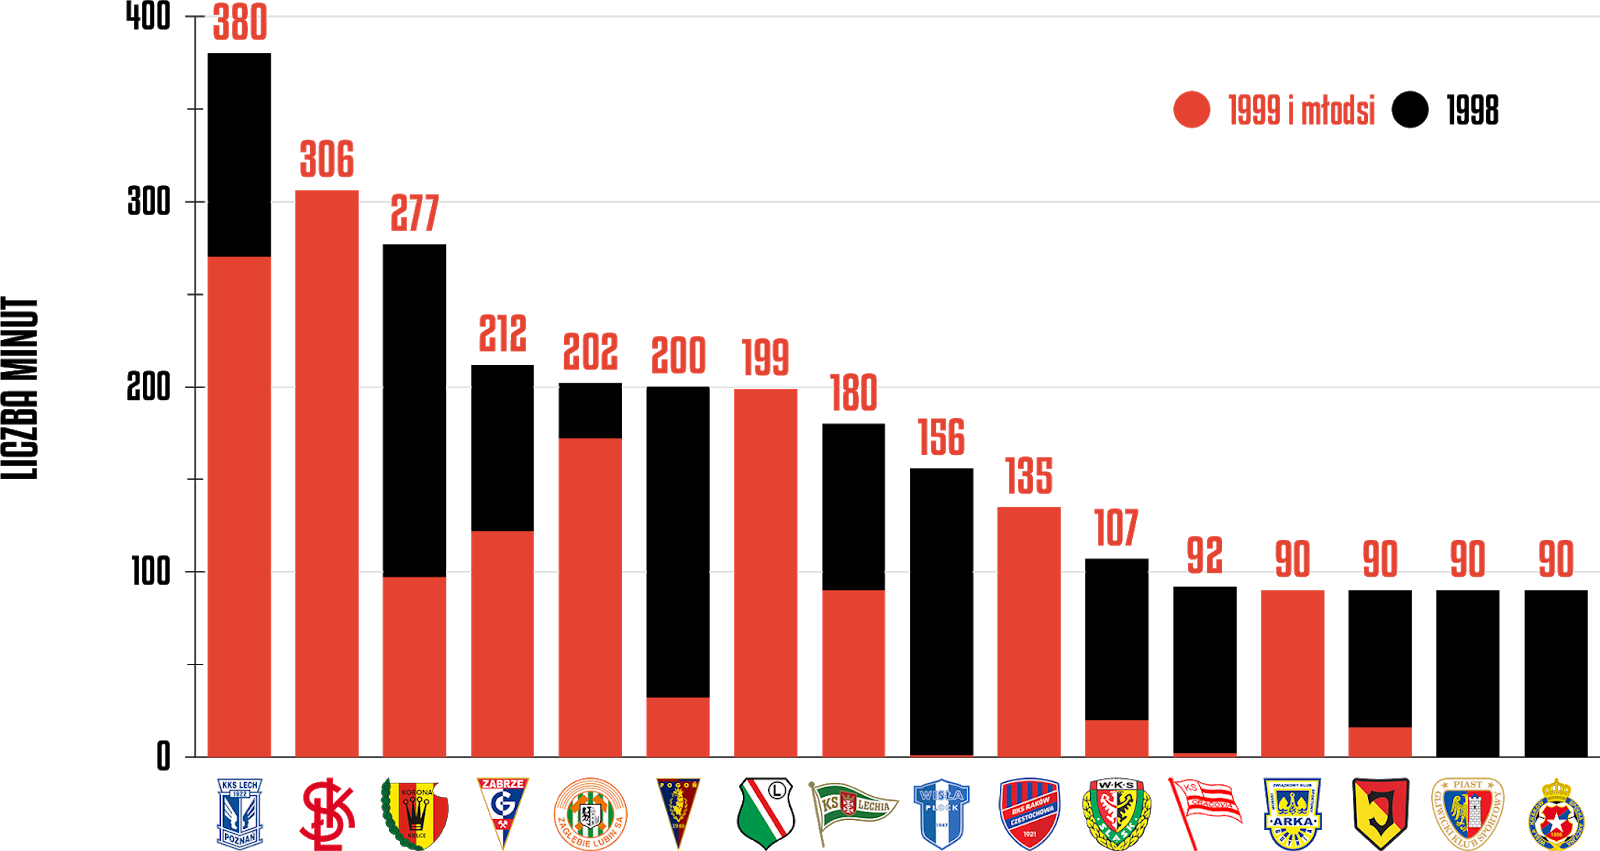 Klasyfikacja klubów pod względem rozegranych minut przez młodzieżowców w 33. kolejce PKO Ekstraklasy<br><br>Źródło: Opracowanie własne na podstawie ekstrastats.pl<br><br>graf. Bartosz Urban